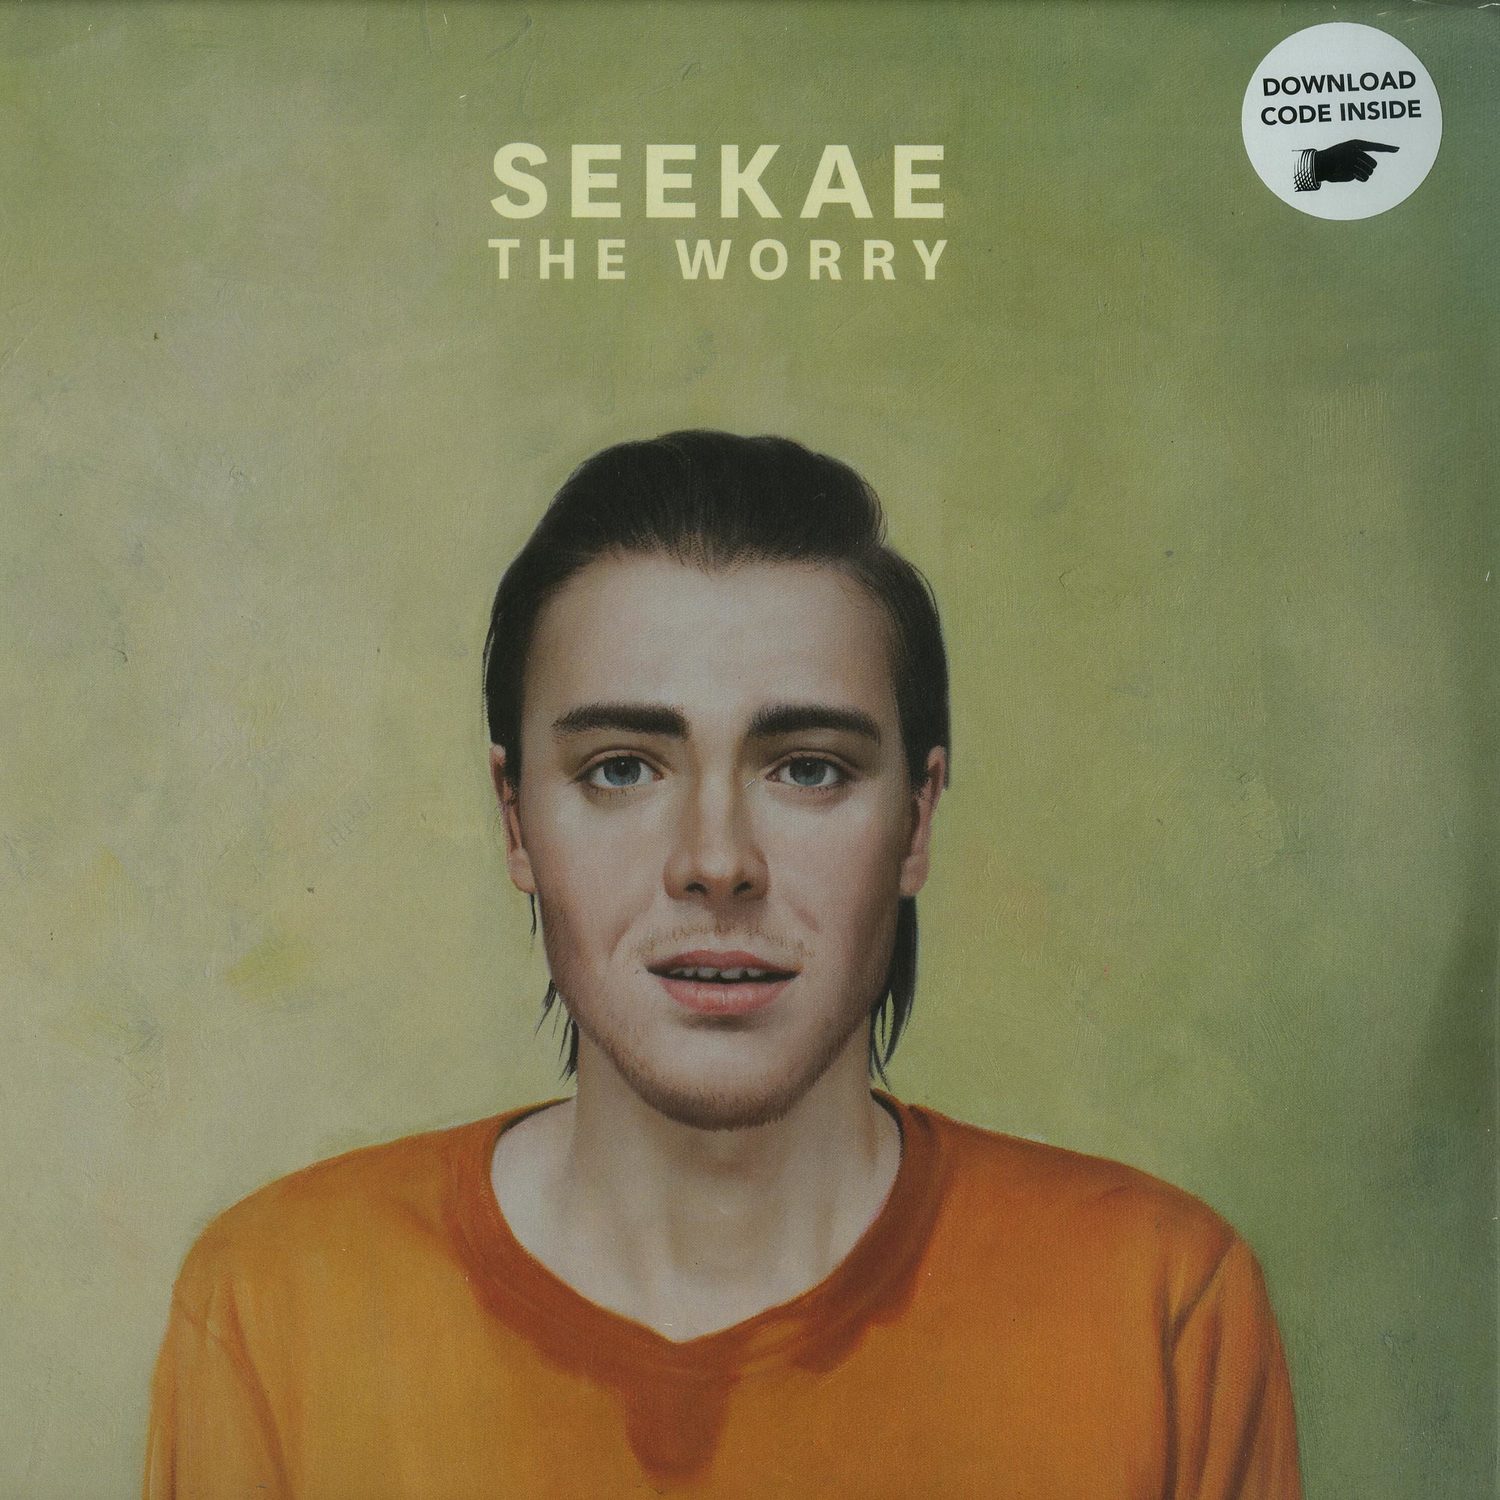 Seekae - THE WORRY 